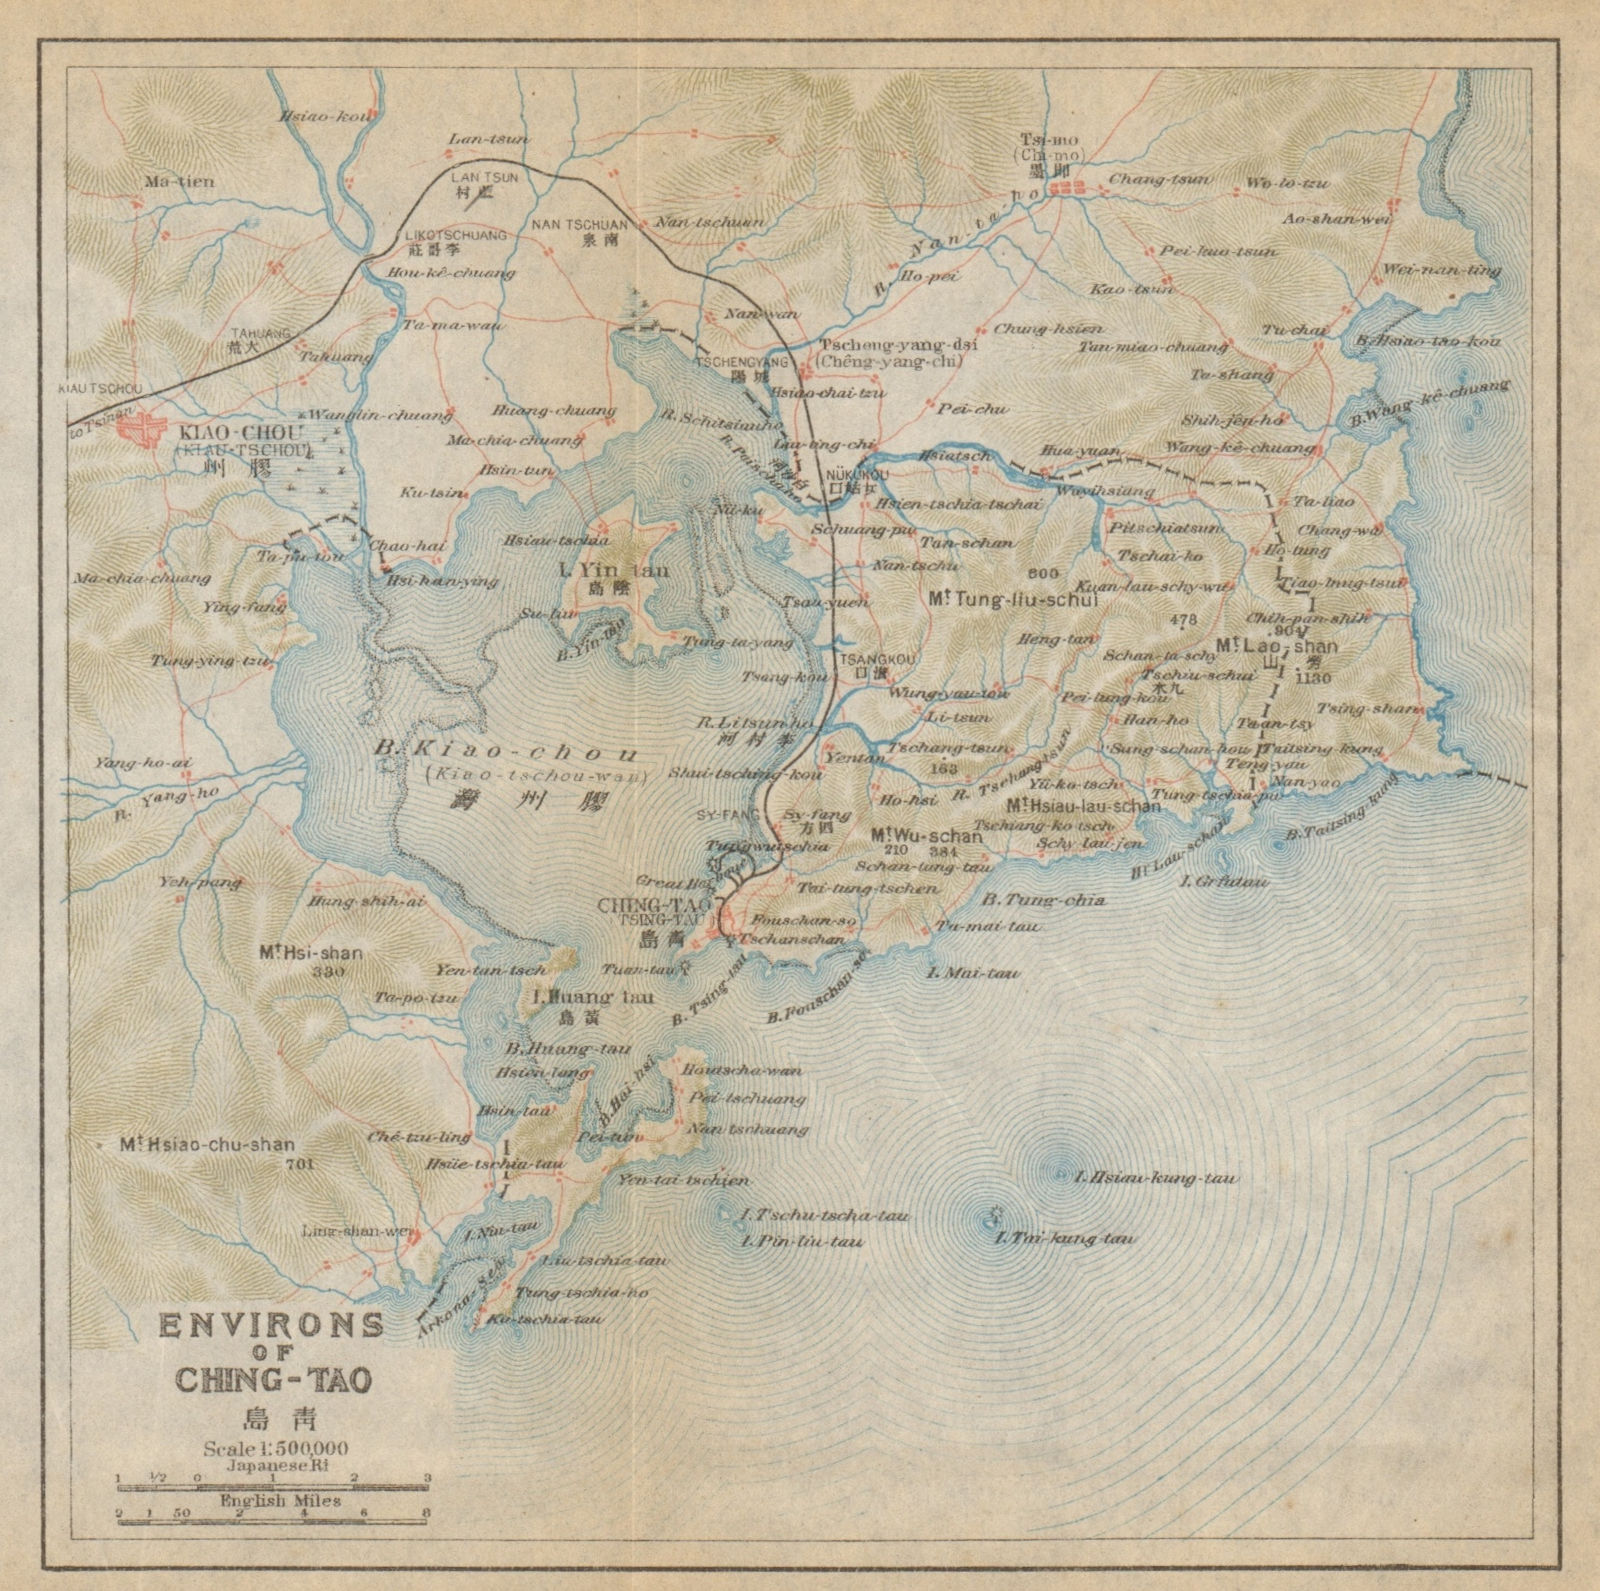 'Environs of Ching-tao'. Qingdao & Jiaozhou Bay antique map. China 1915